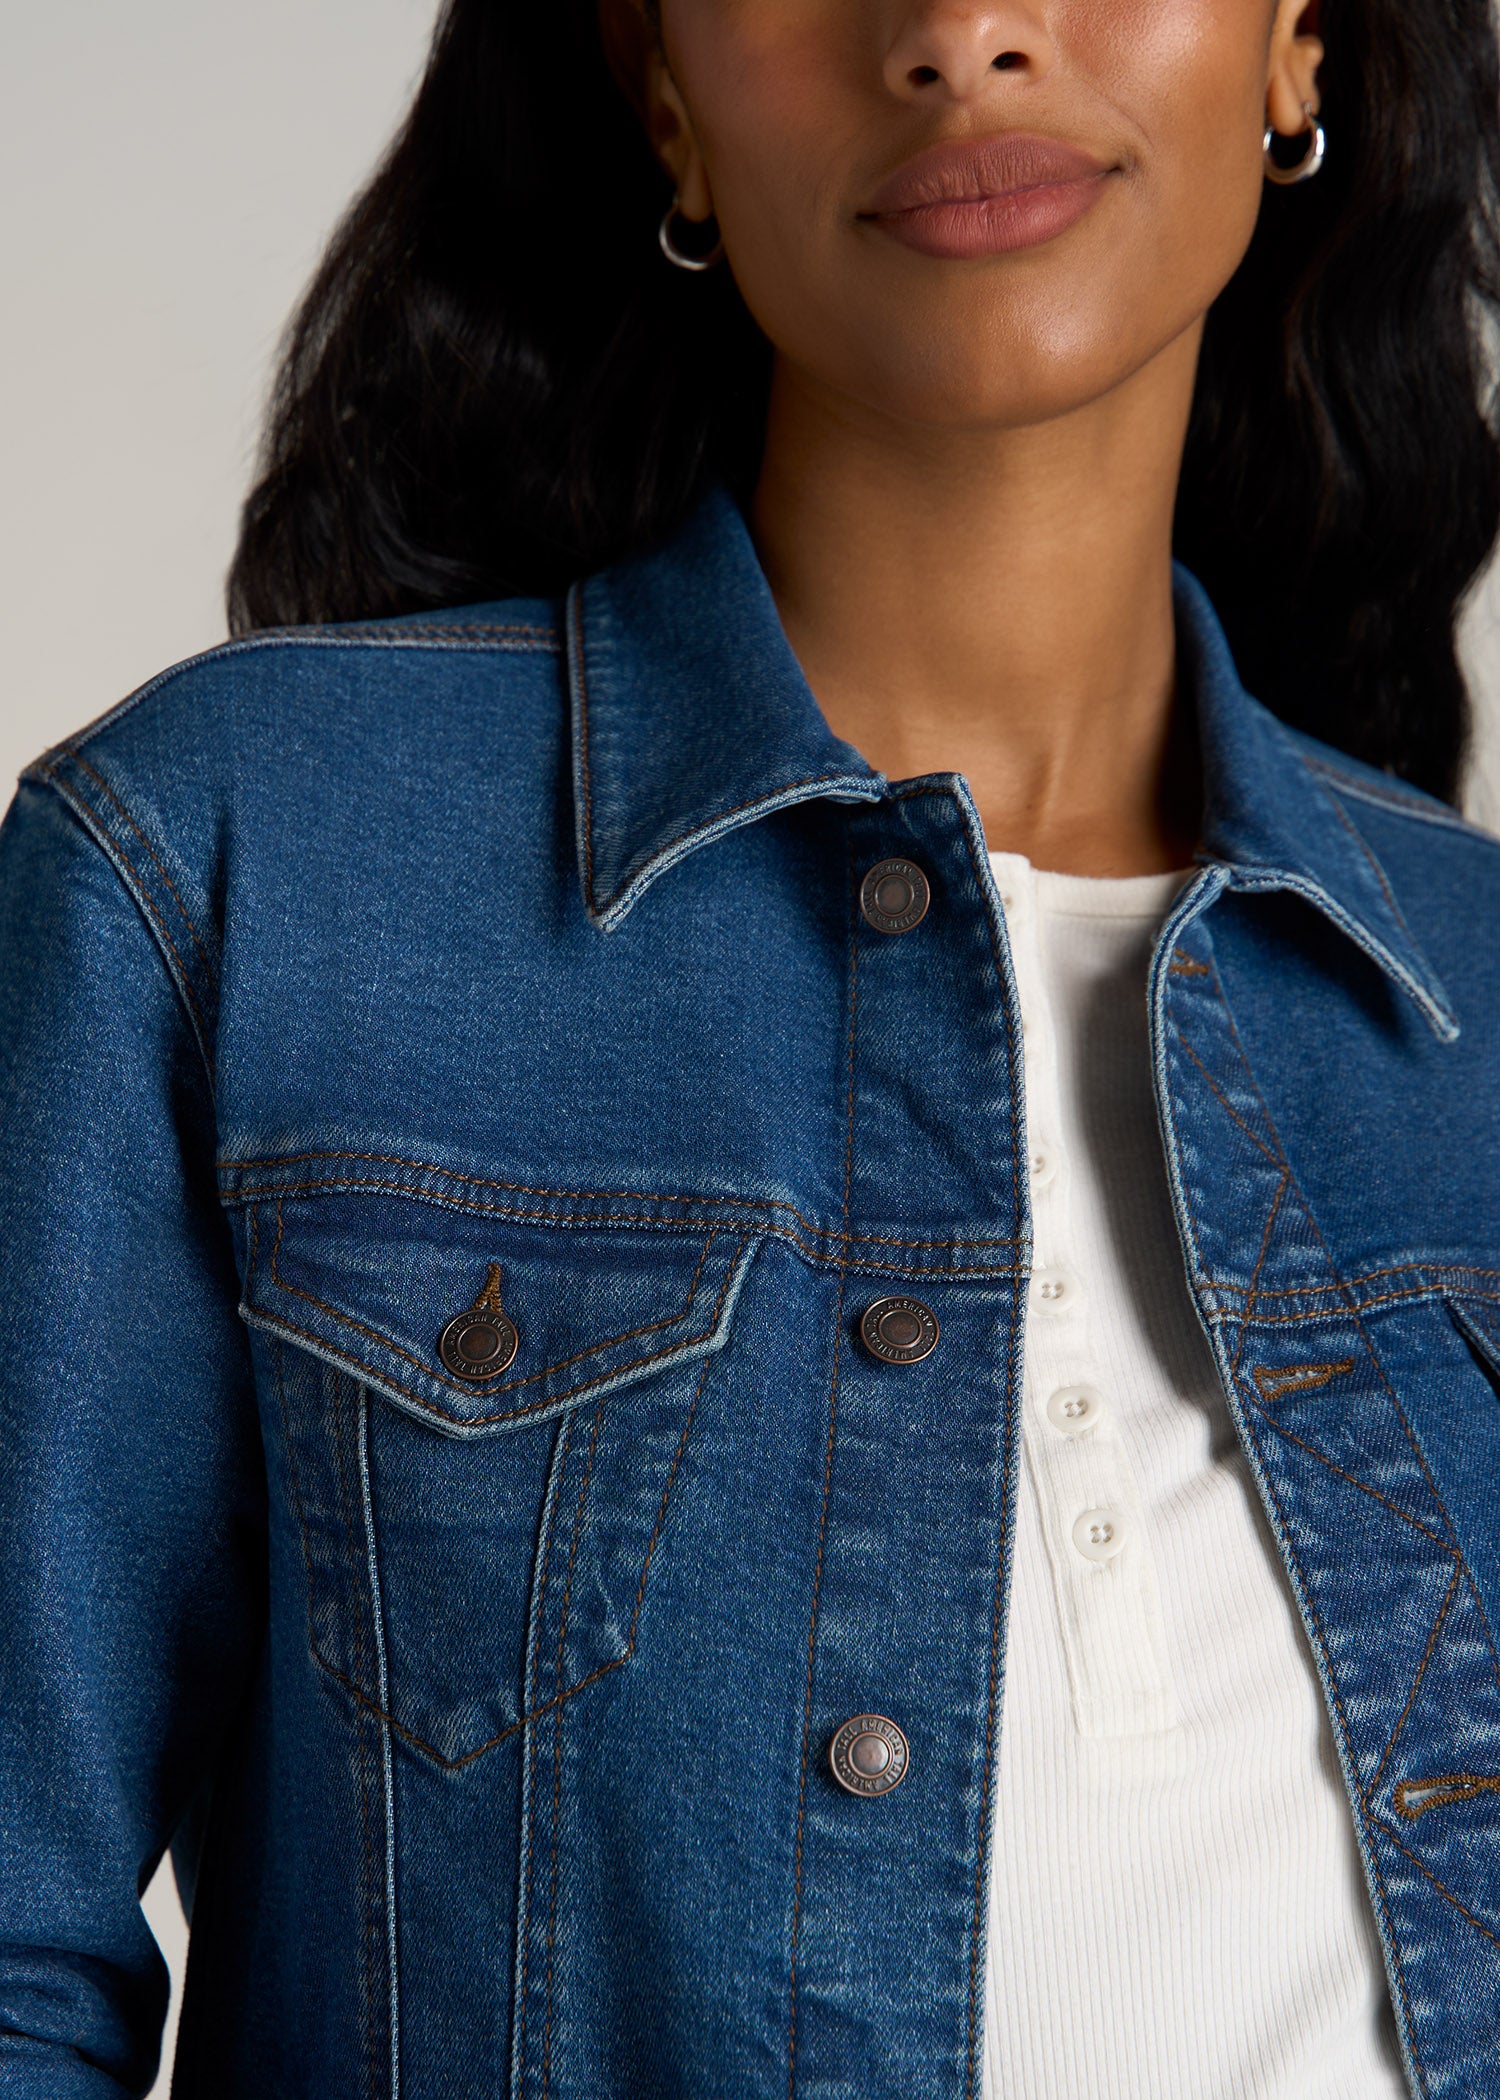 18 Ways to Wear a Denim Jacket - Fashion Jackson